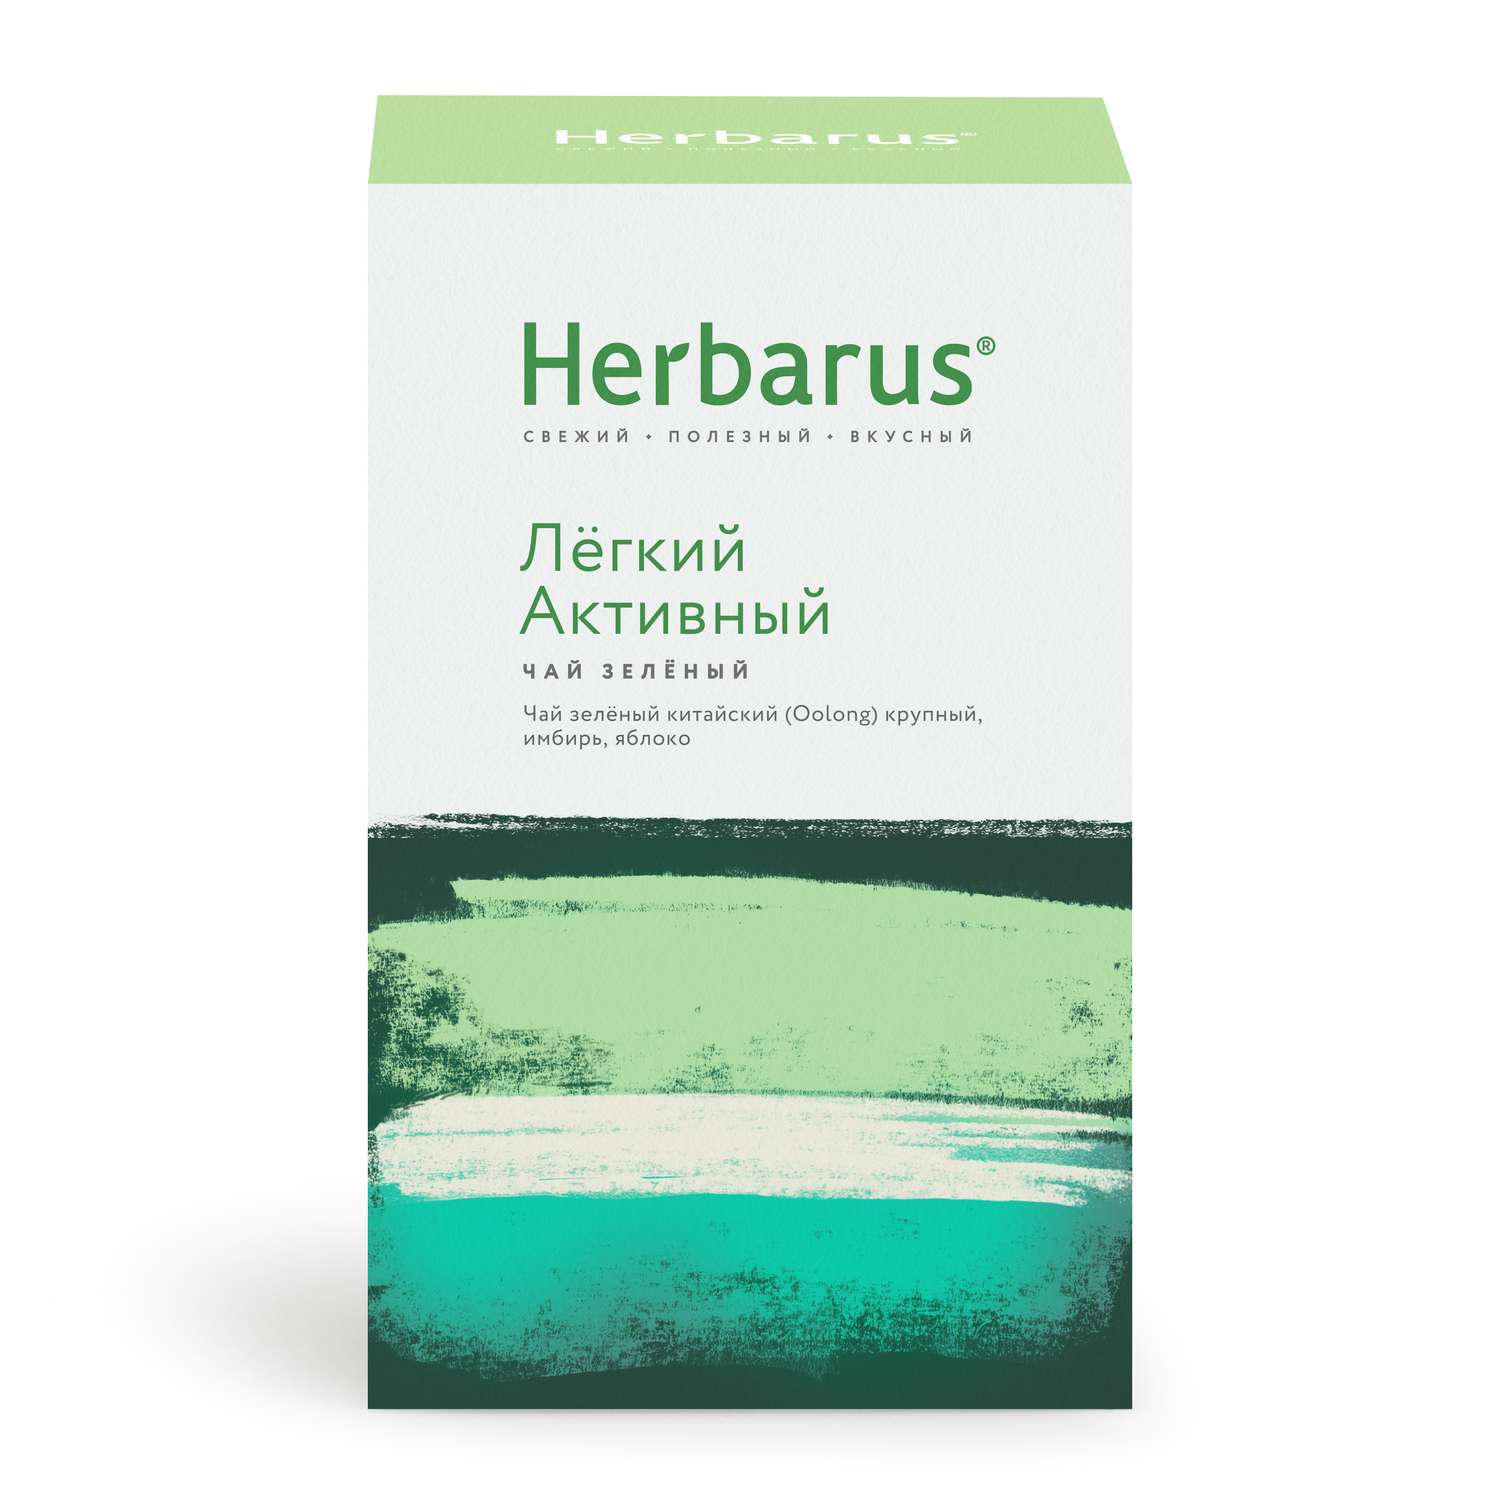 Зеленый чай с добавками Herbarus Легкий Активный листовой 100 г. - фото 4